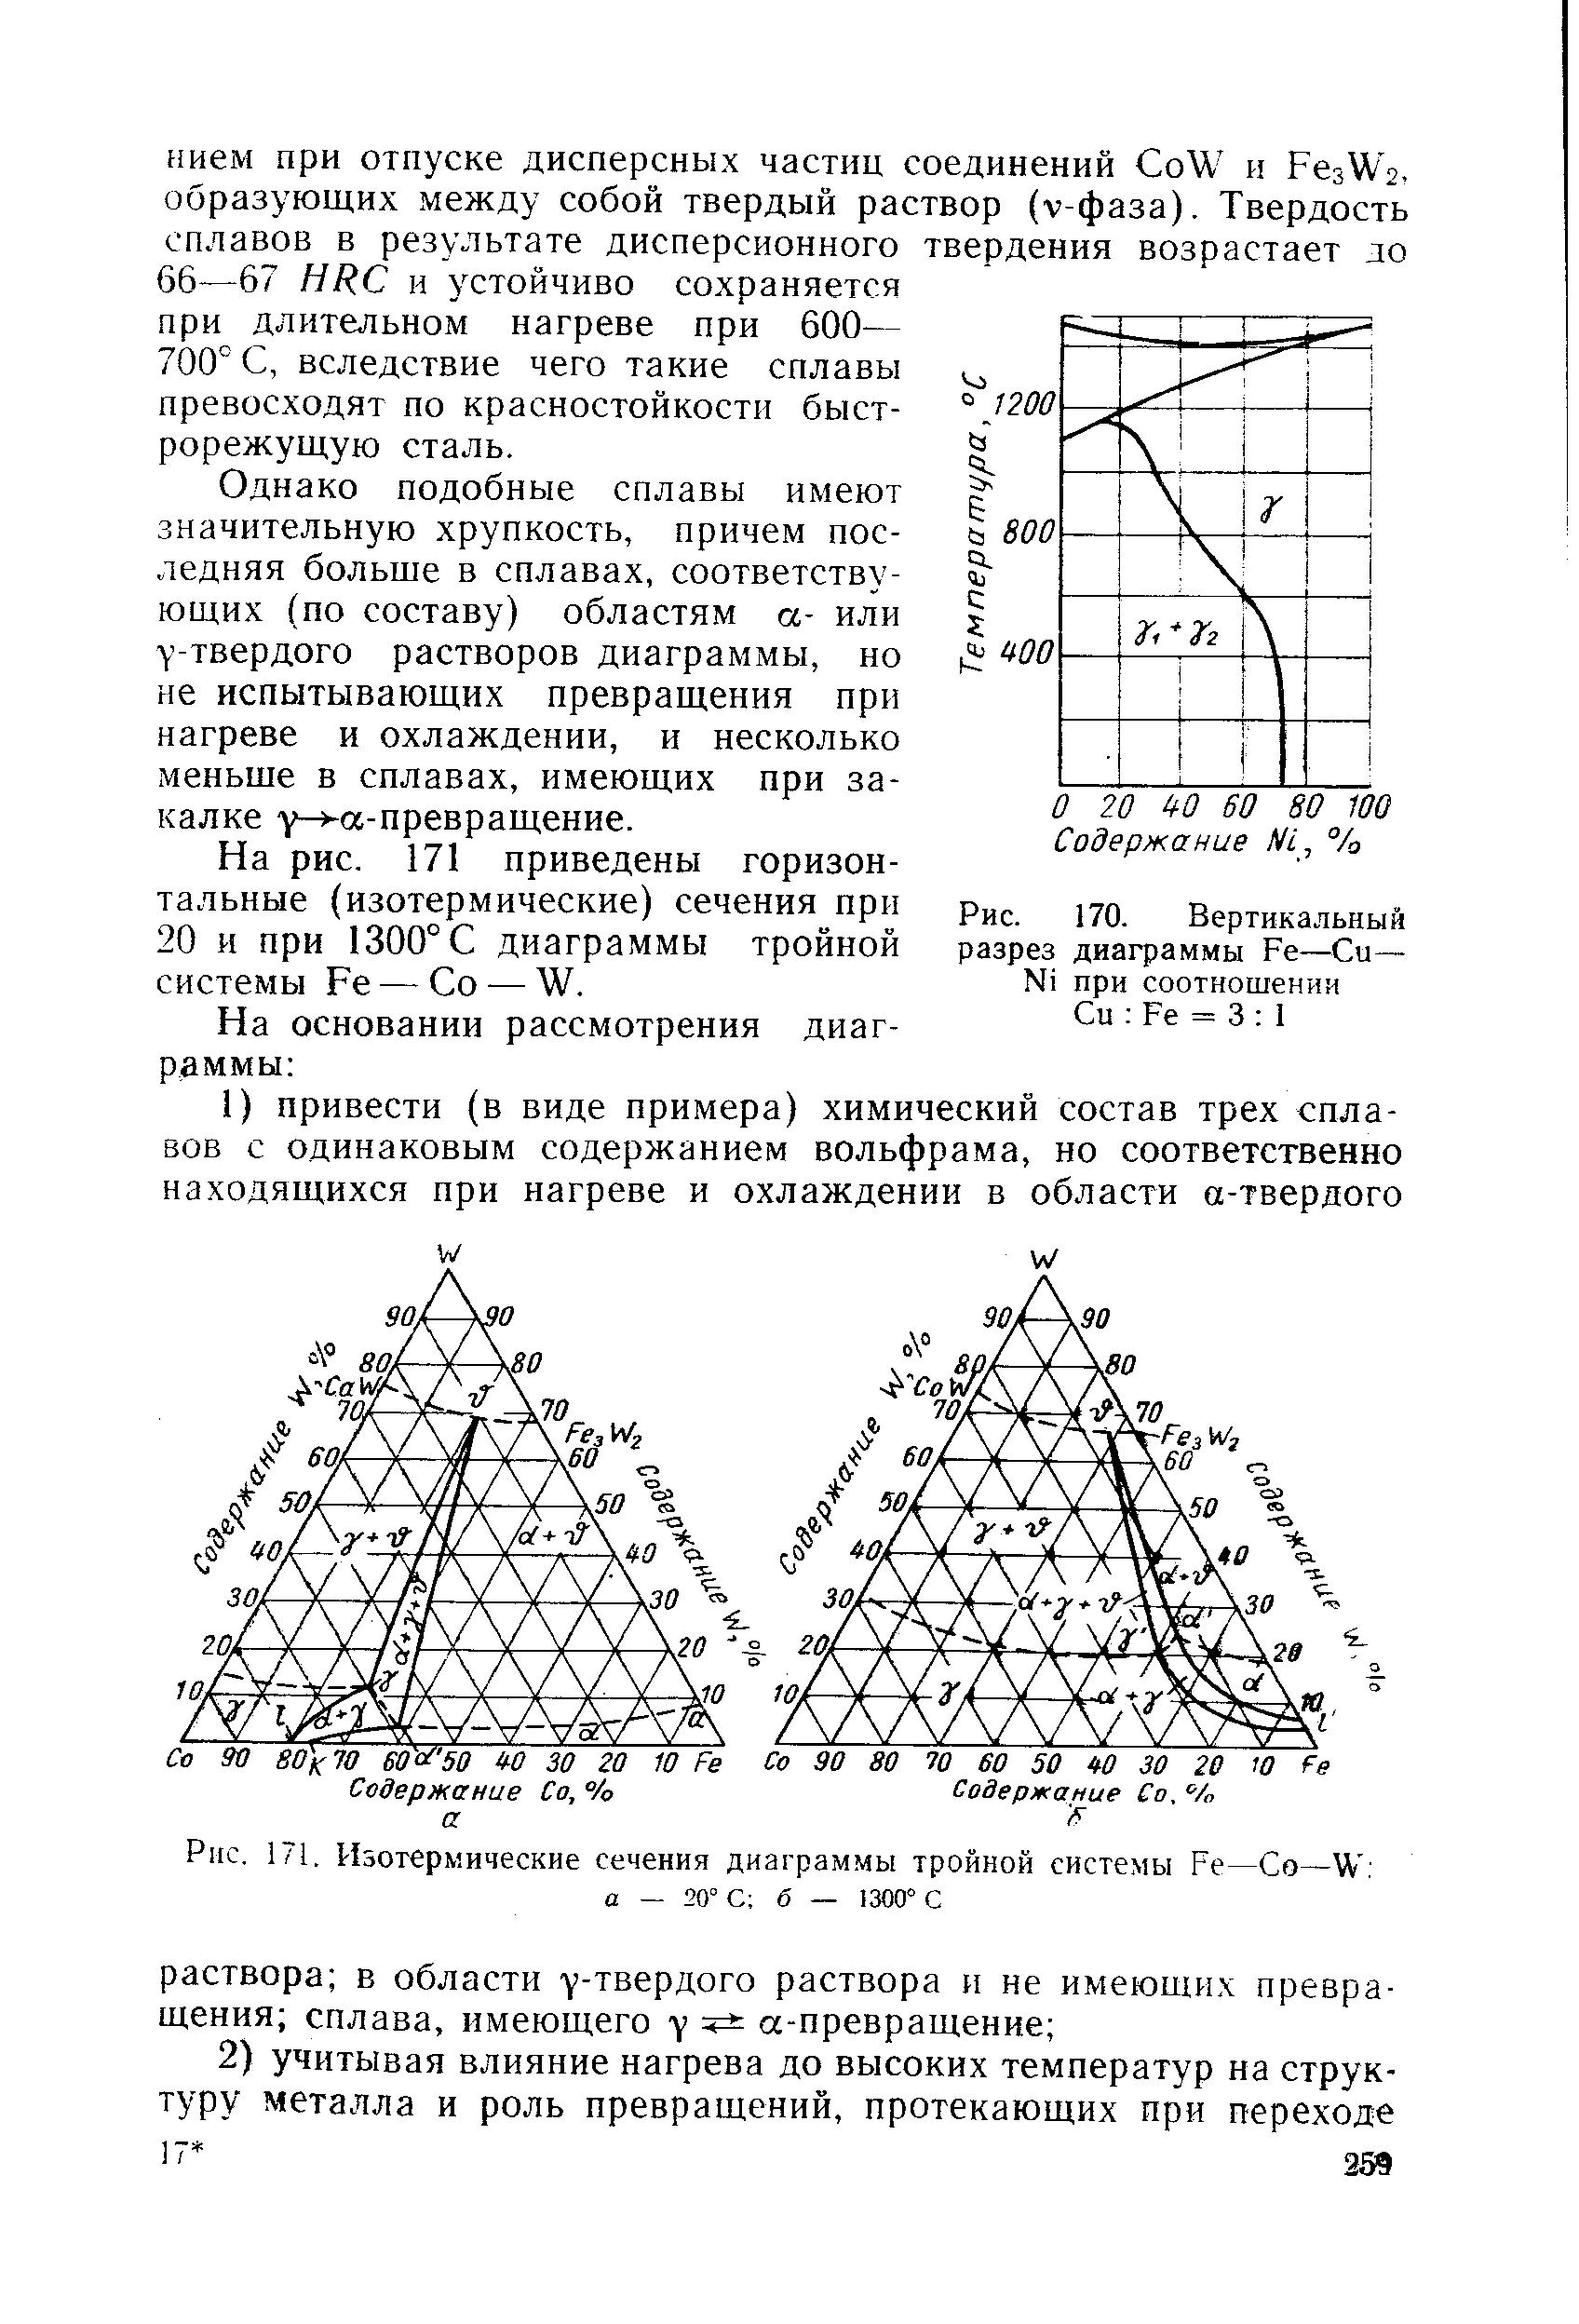 Рис. 171, Изотермические сечения диаграммы тройной системы Ре—Со— а — 20 С б — 1300 С
